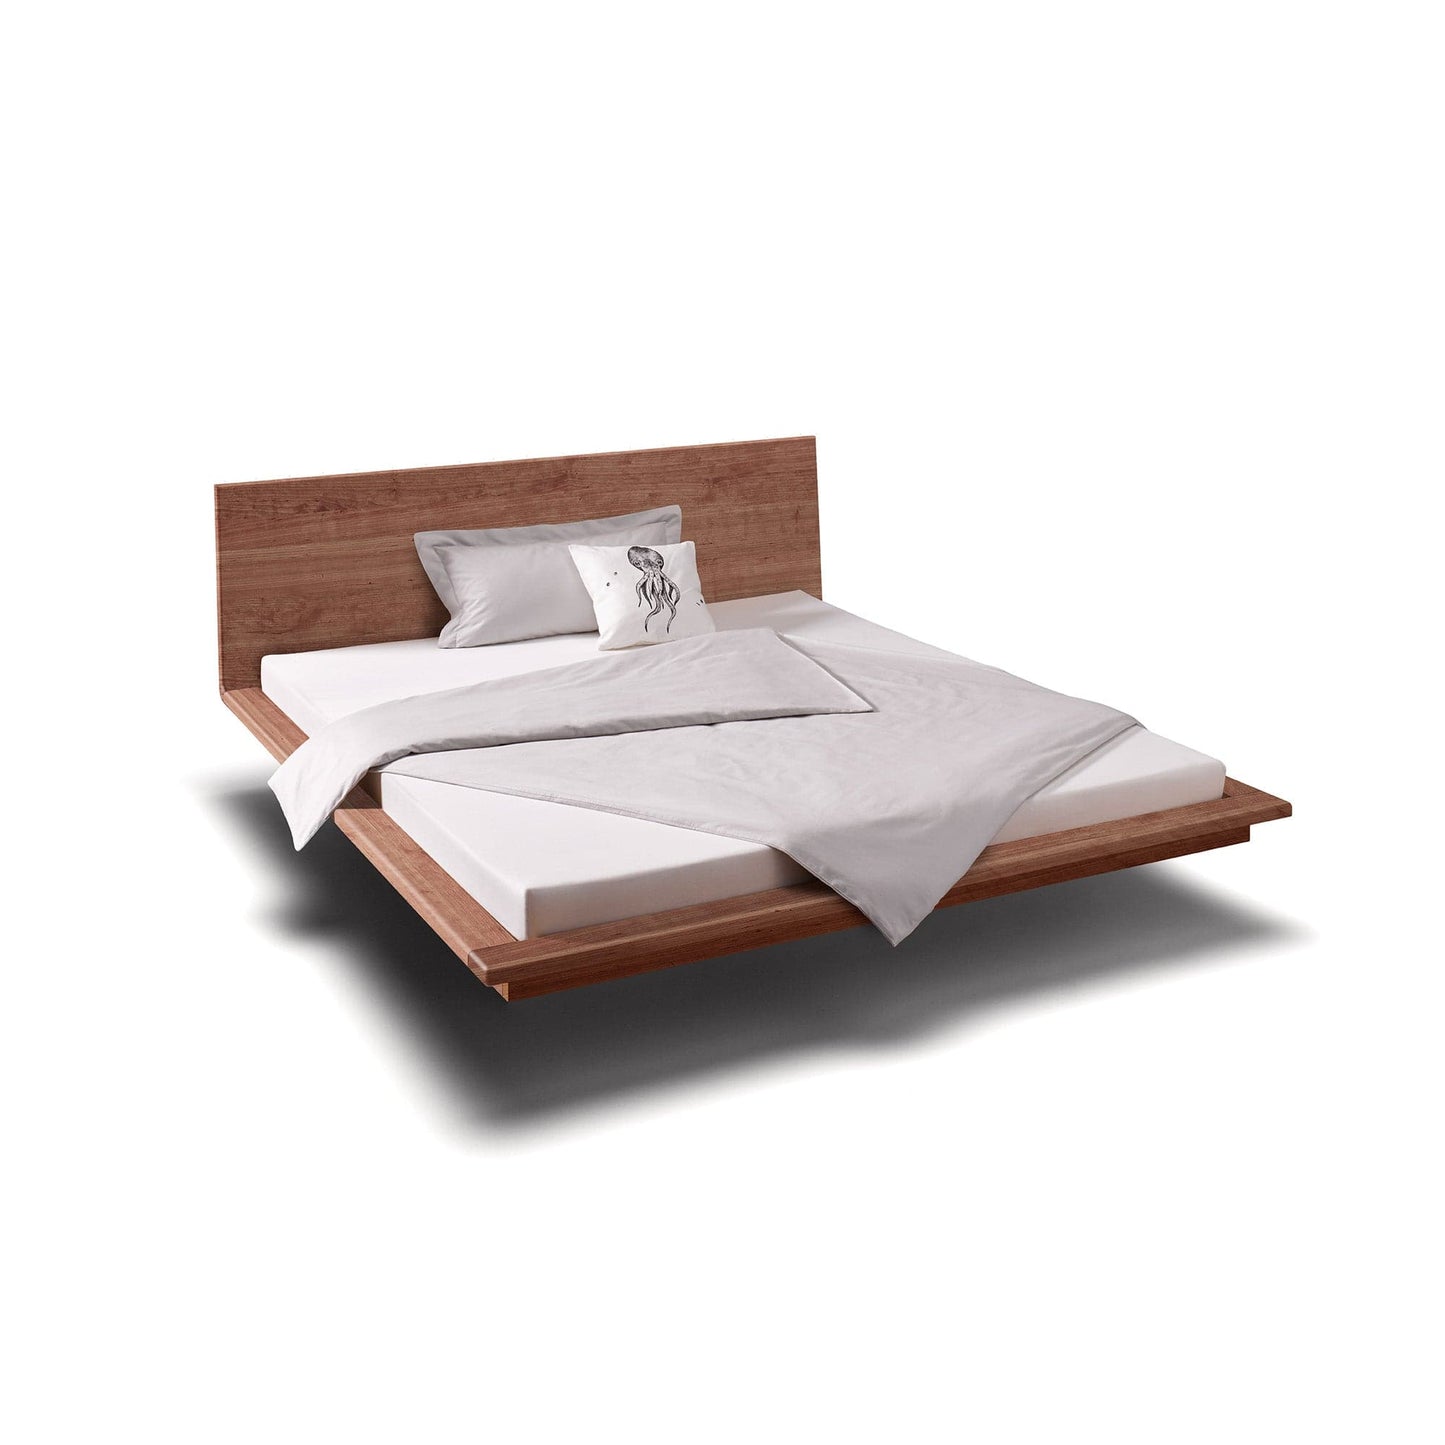 Holzmanufaktur Bett MATIS ist ein hochwertiges, schwebendes  Designerbett.